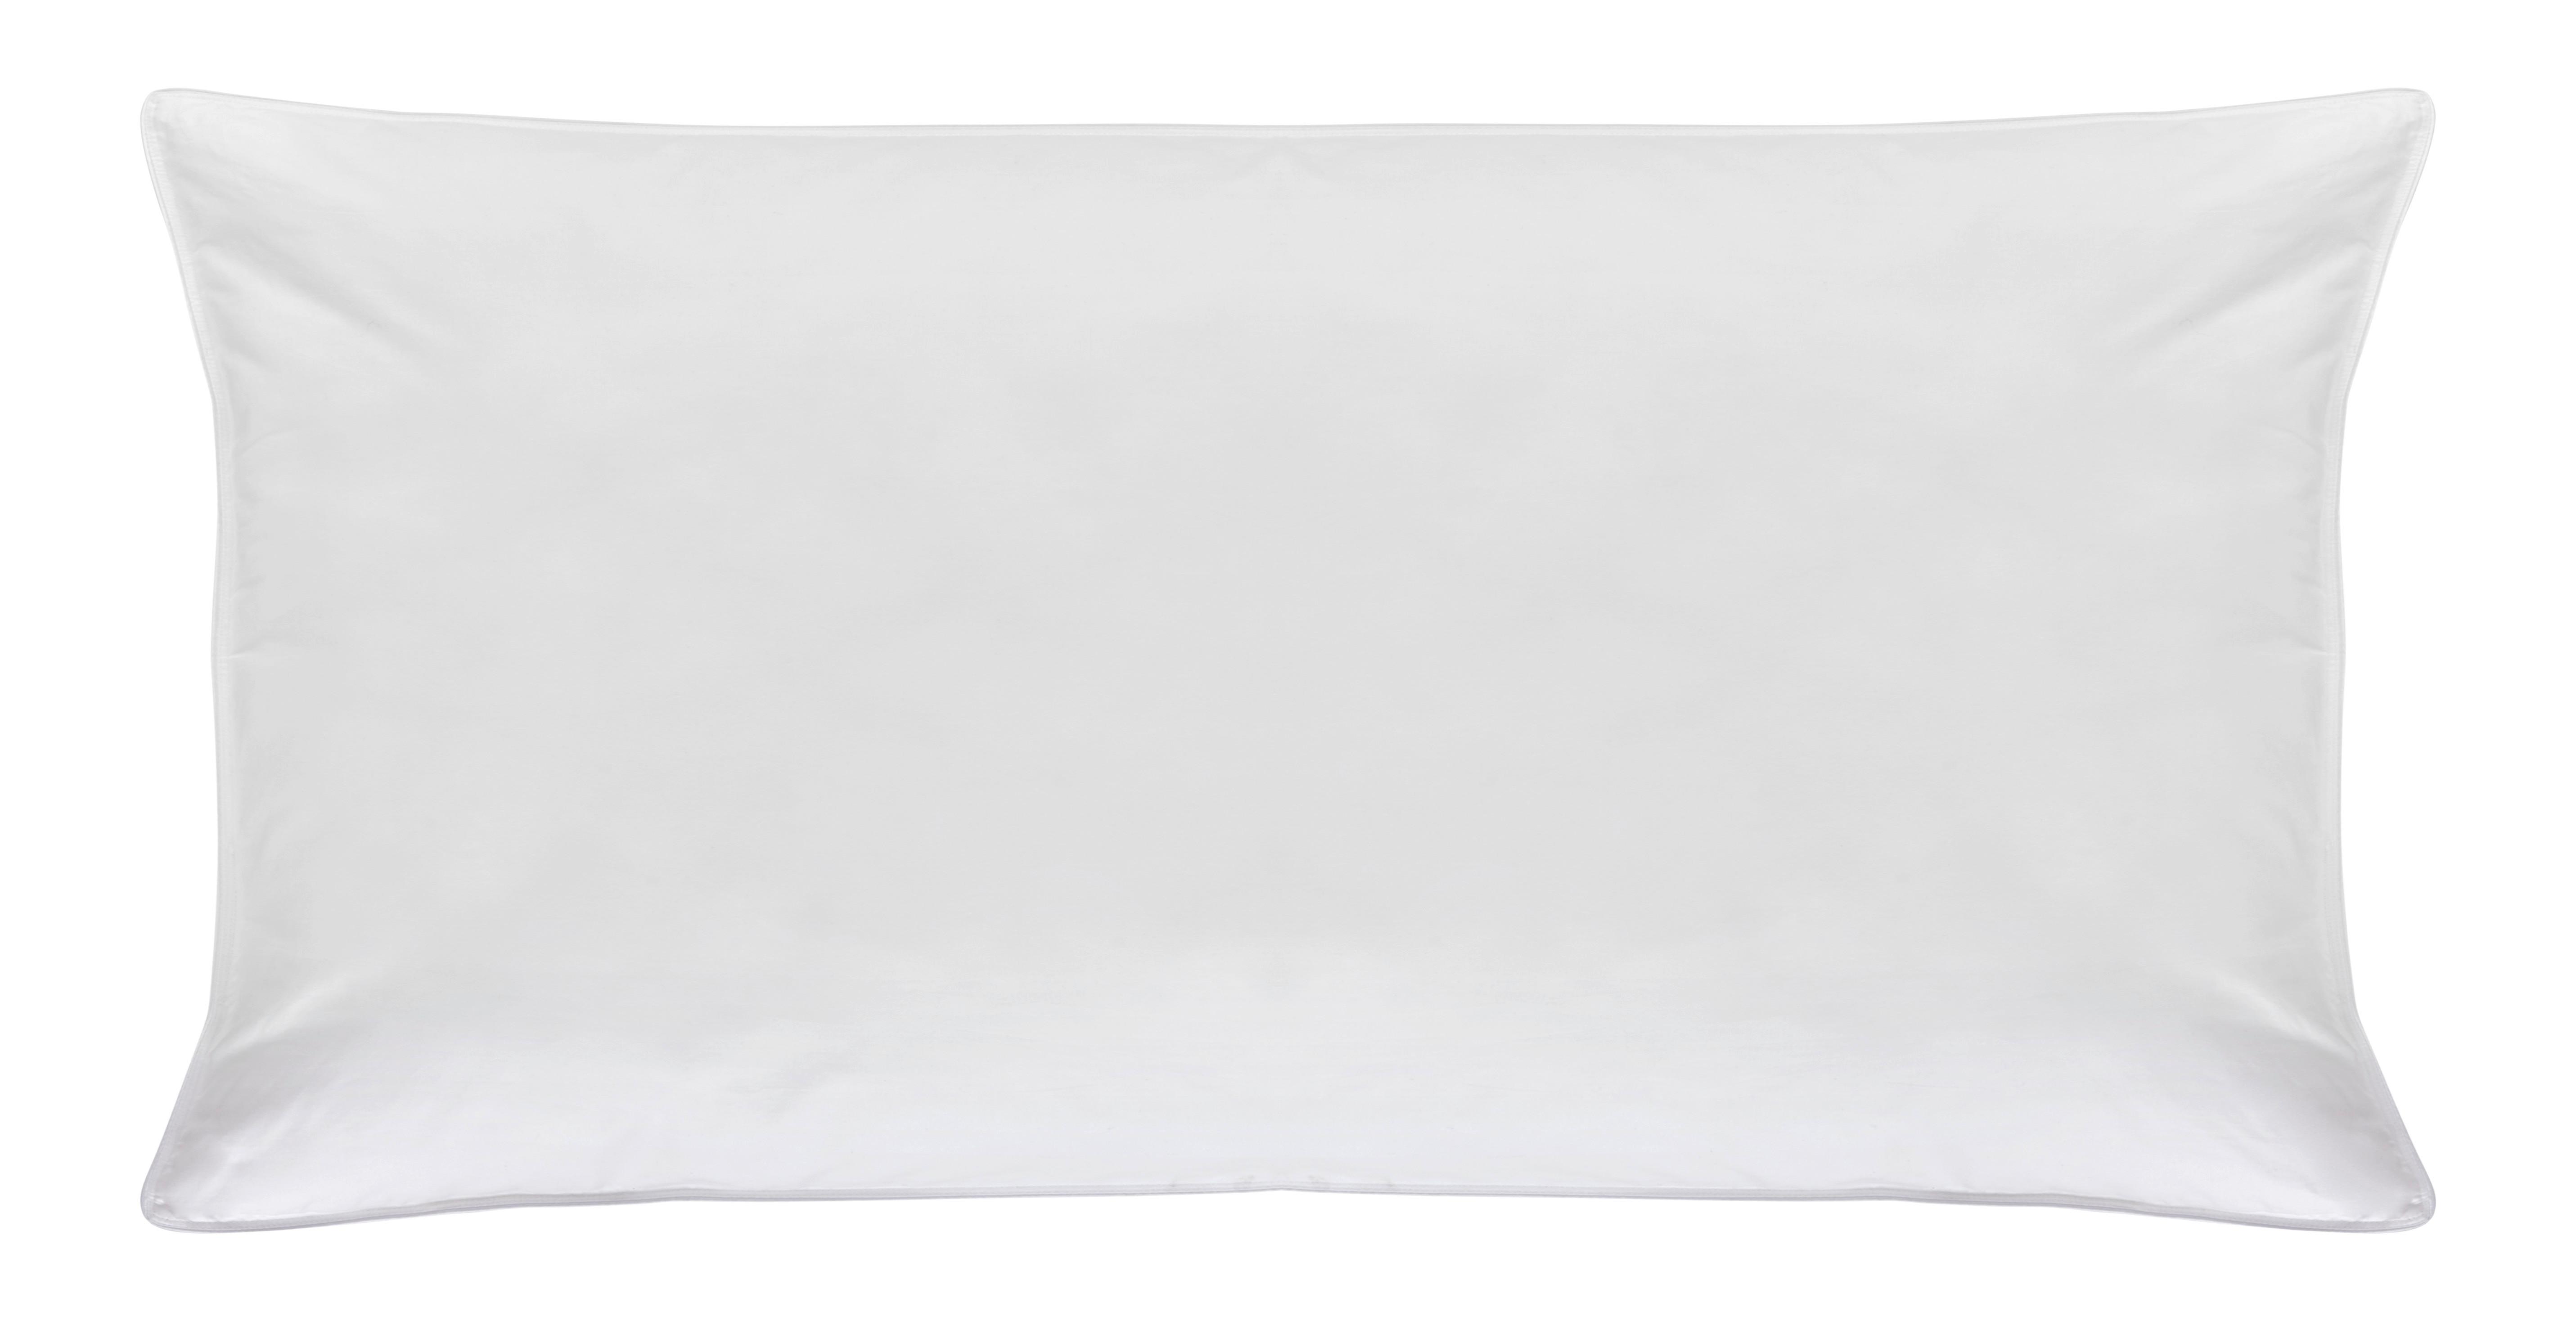 Kopfpolster Vegandown ca. 40x80cm - Weiß, KONVENTIONELL, Textil (40/80cm) - Premium Living